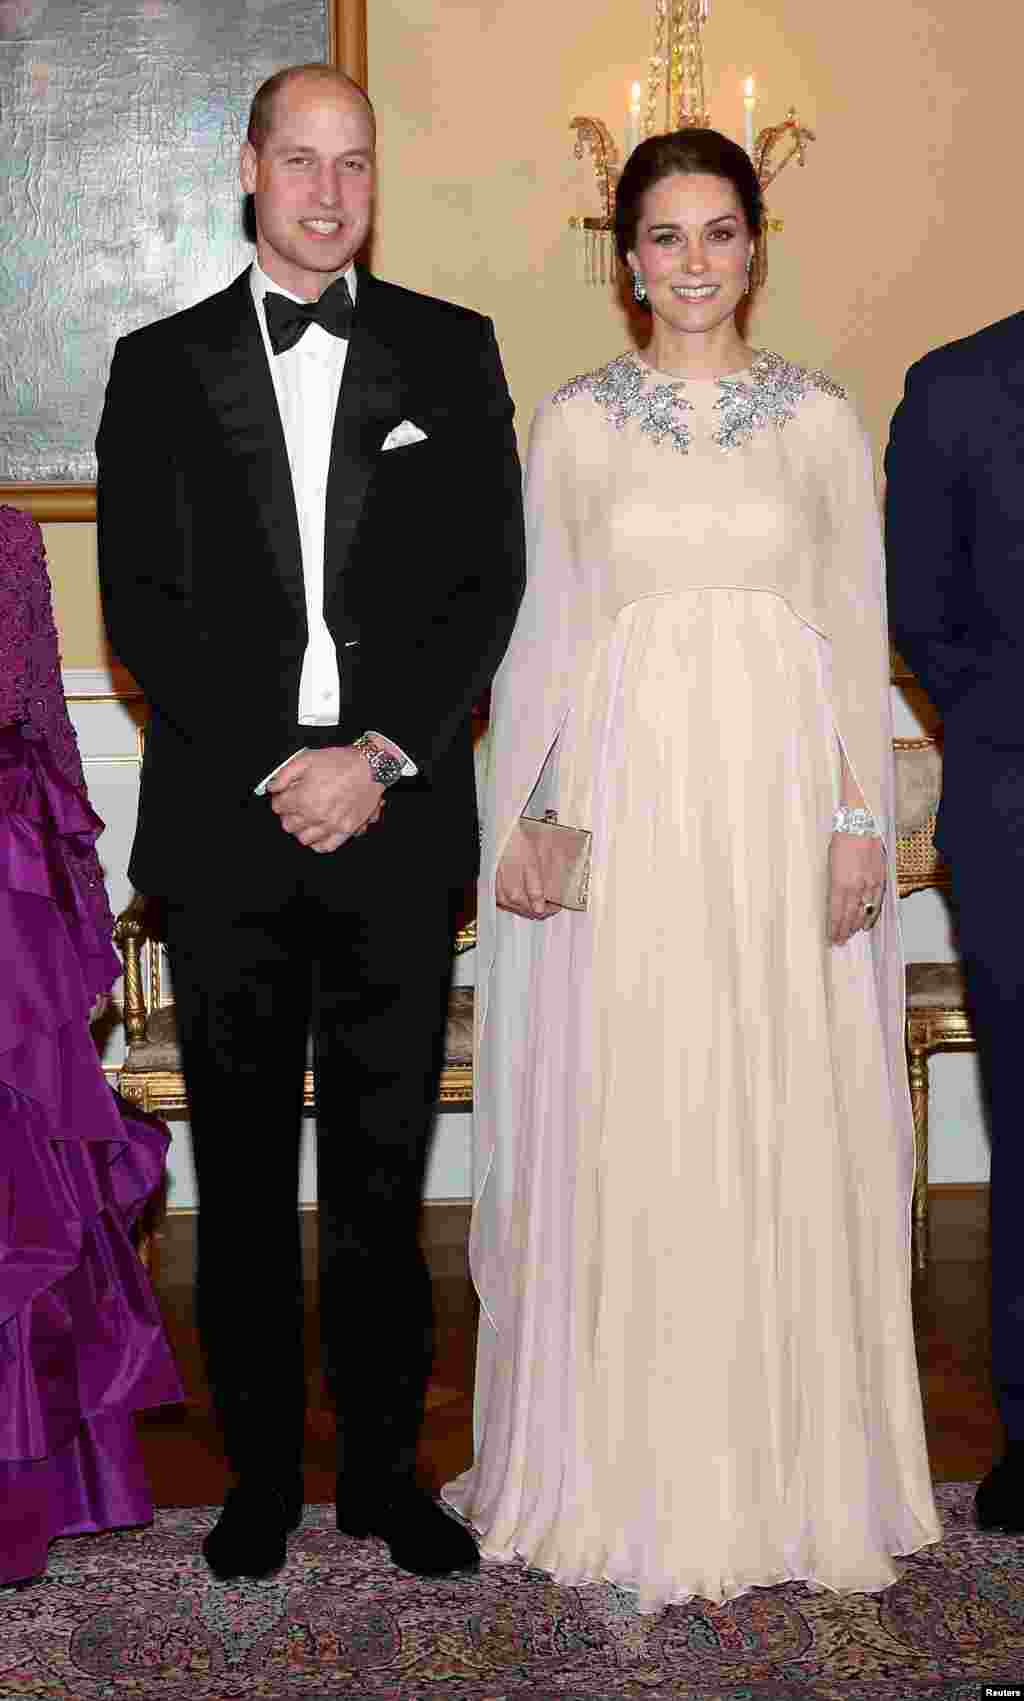 عکسی از &laquo;کیت میدلتون&raquo; و همسرش شاهزاده ویلیام از بریتانیا پیش از ضیافت شام در کاخ سلطنتی اسلو نروژ &nbsp;